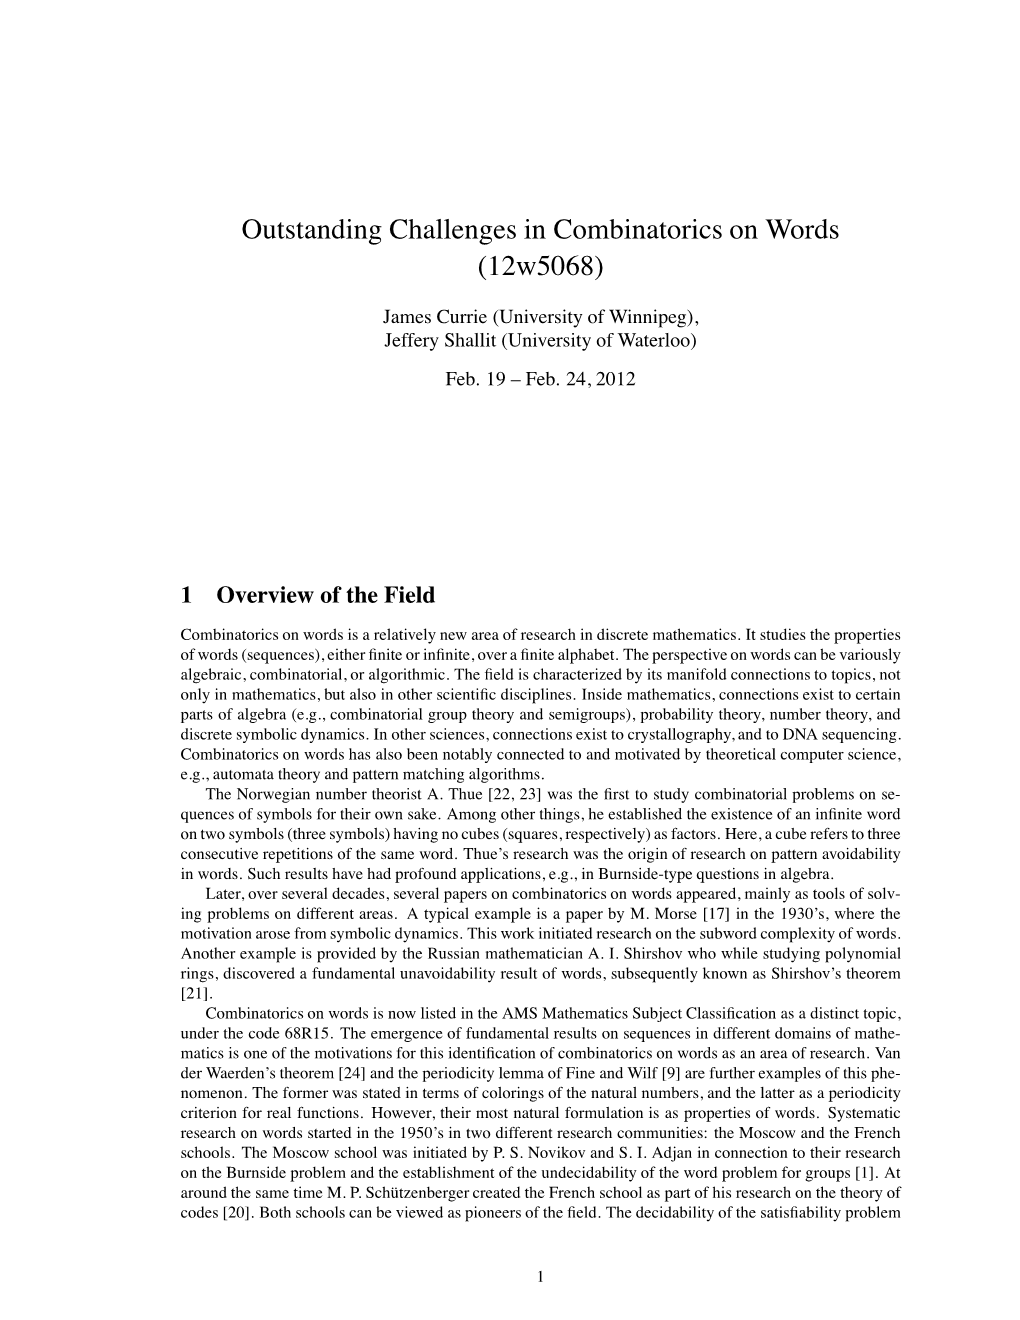 Outstanding Challenges in Combinatorics on Words (12W5068)